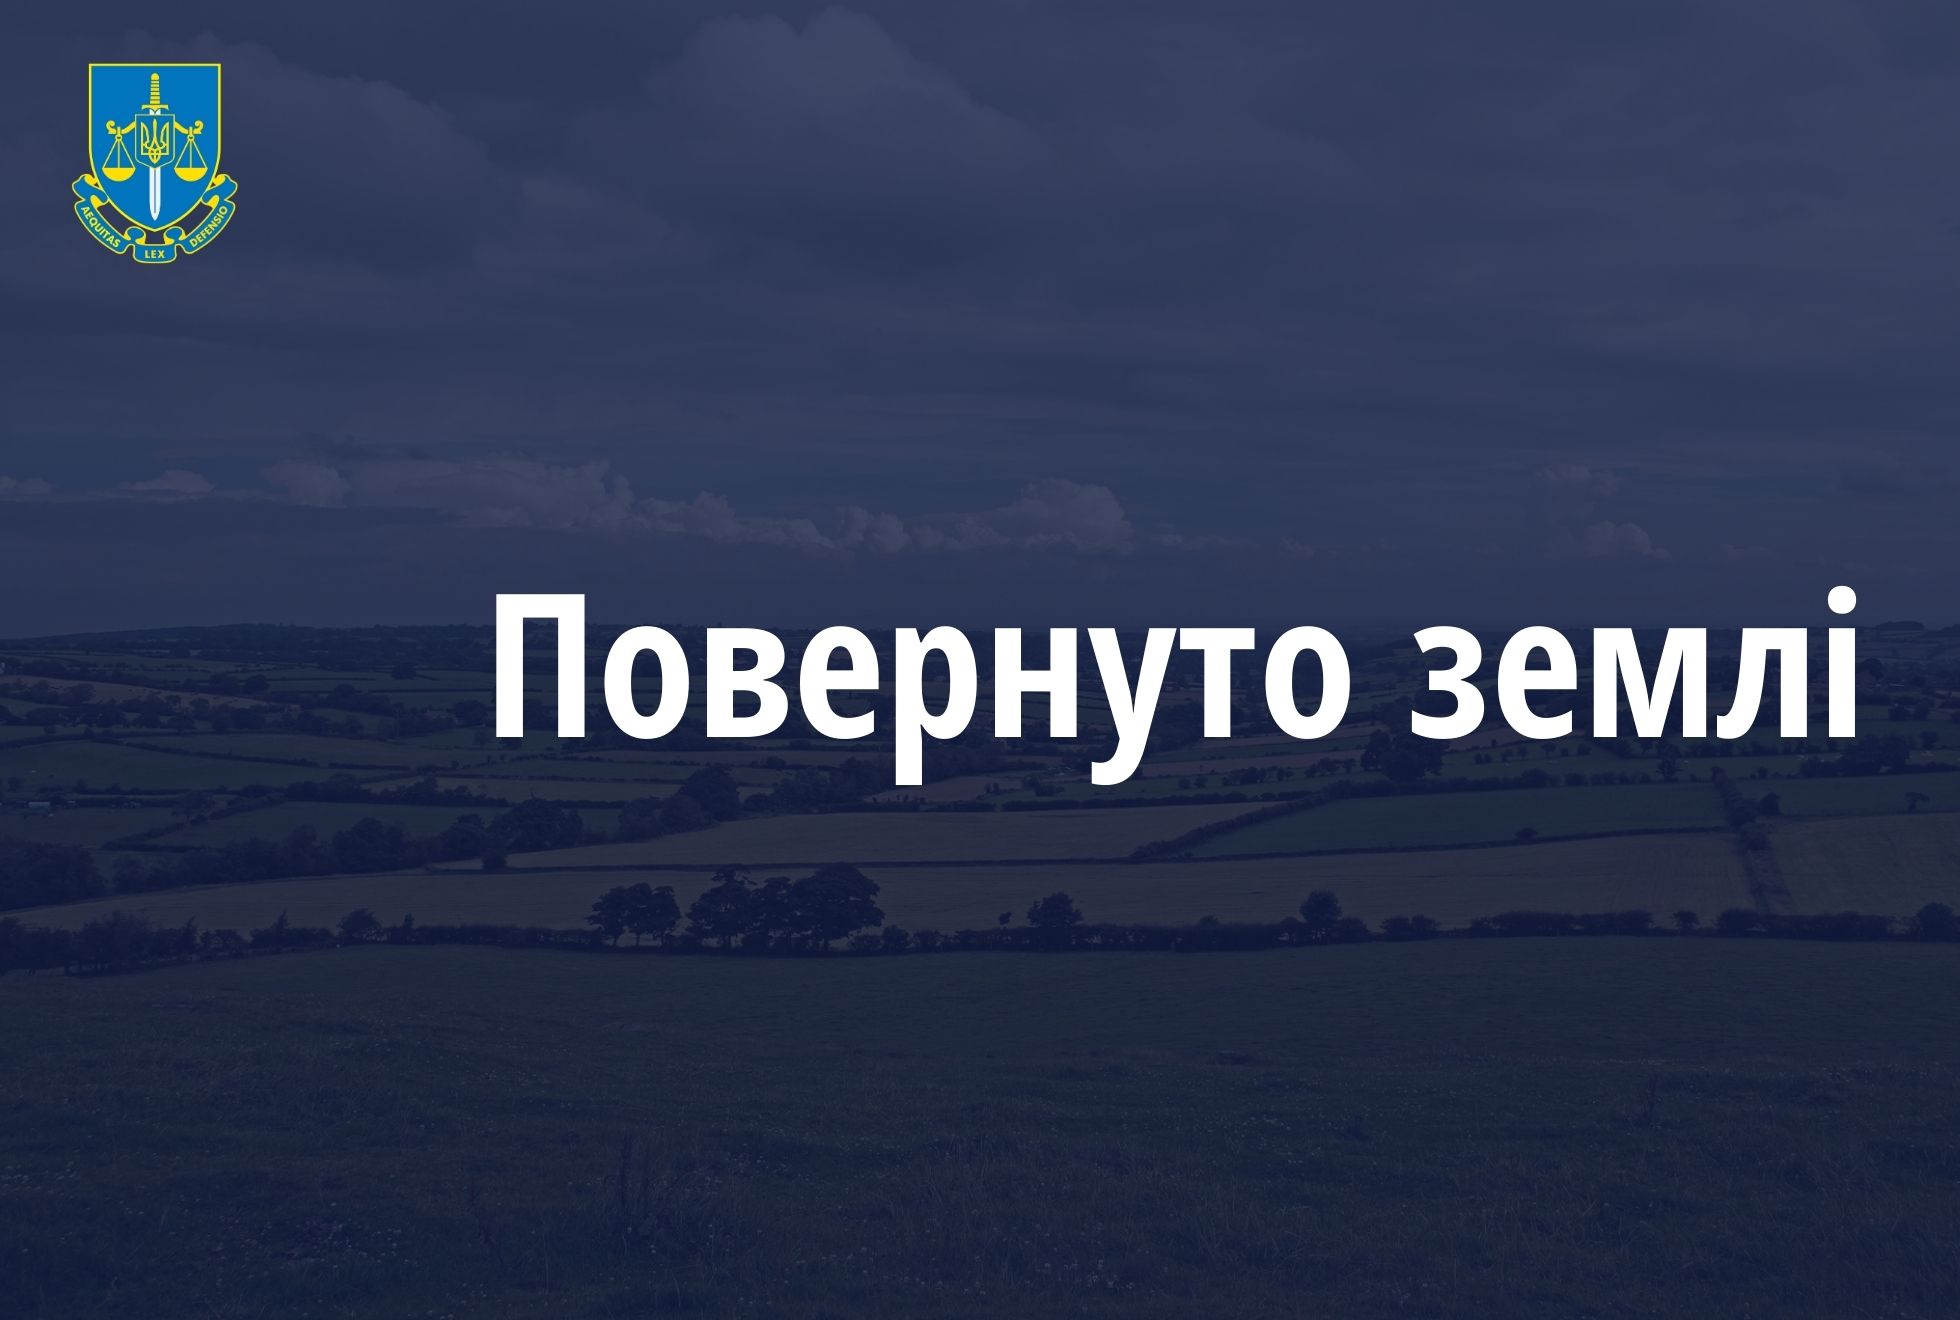 Харківські прокурори через суд повернули державі земельну ділянку прикордонної смуги вартістю майже 5 млрд грн